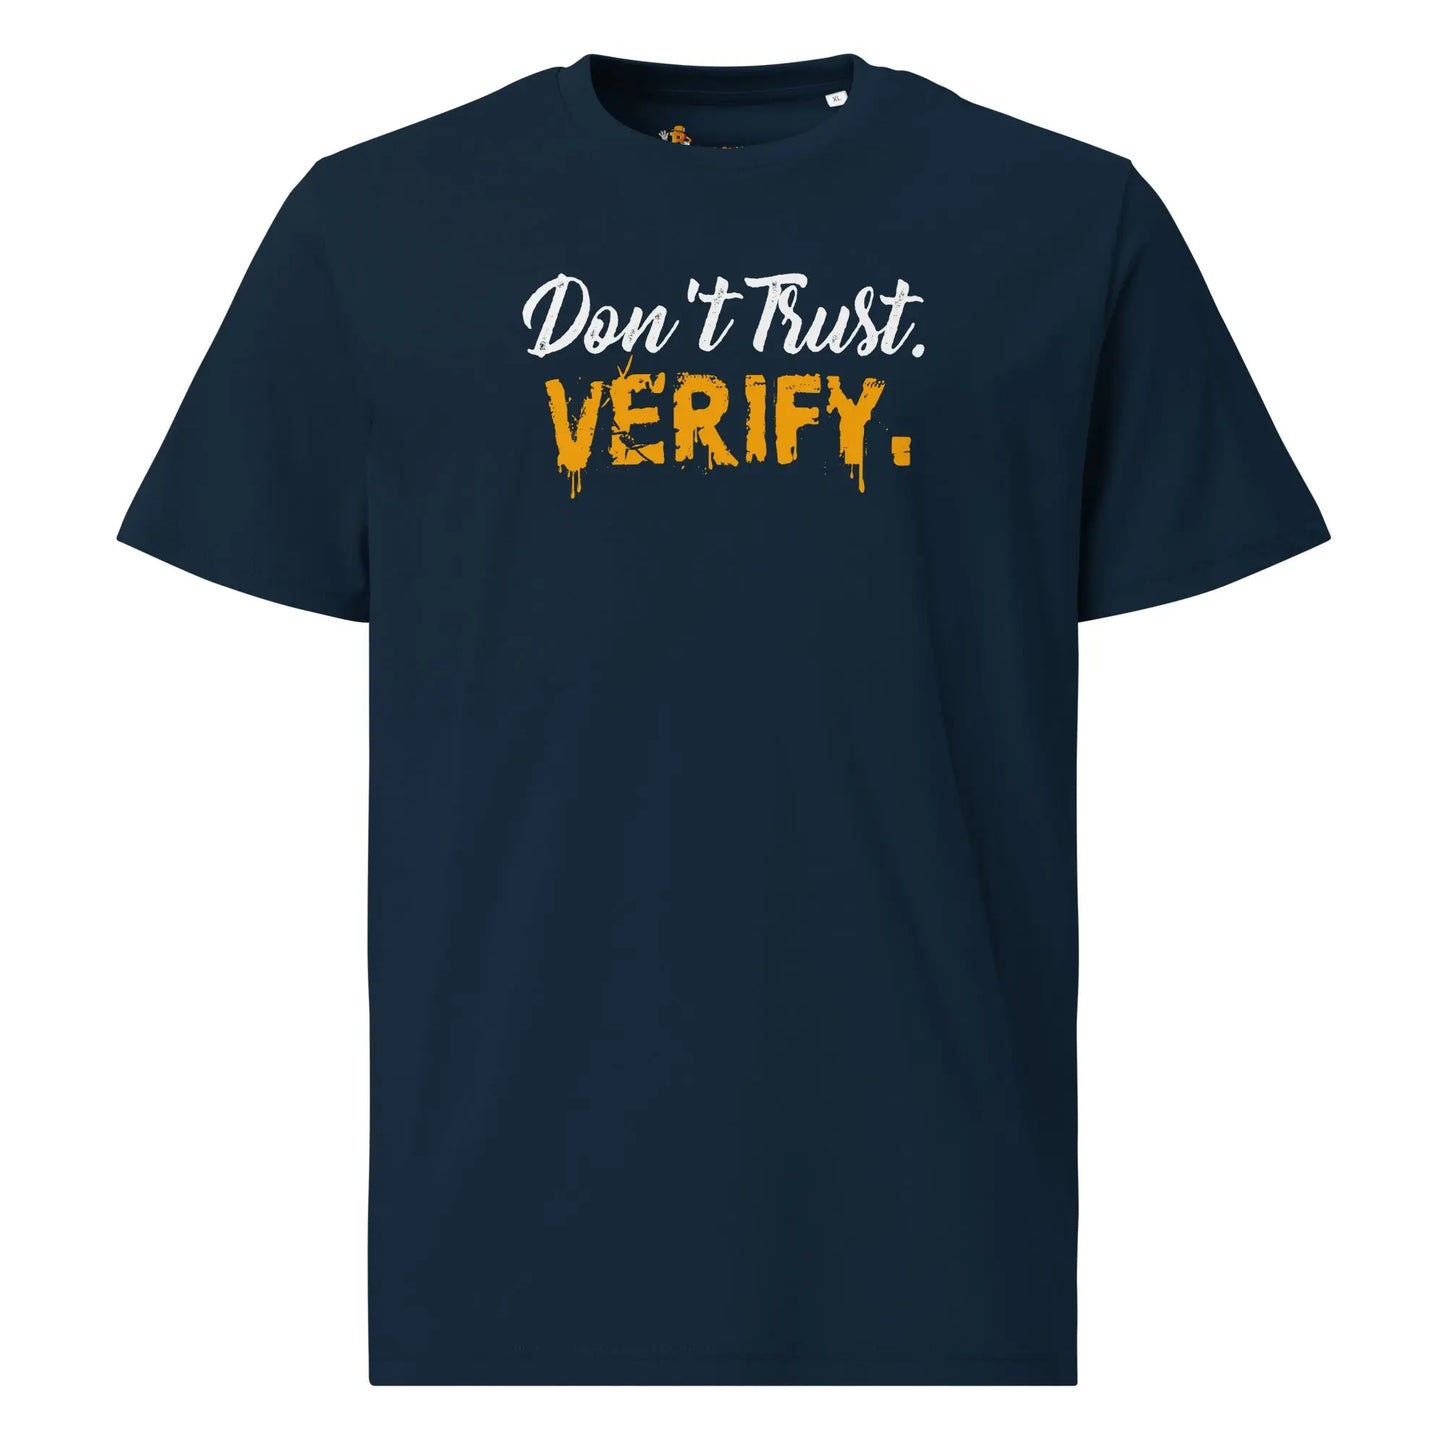 Don`t Trust Verify - Premium Unisex Organic Cotton Bitcoin T-shirt Navy Blue Color